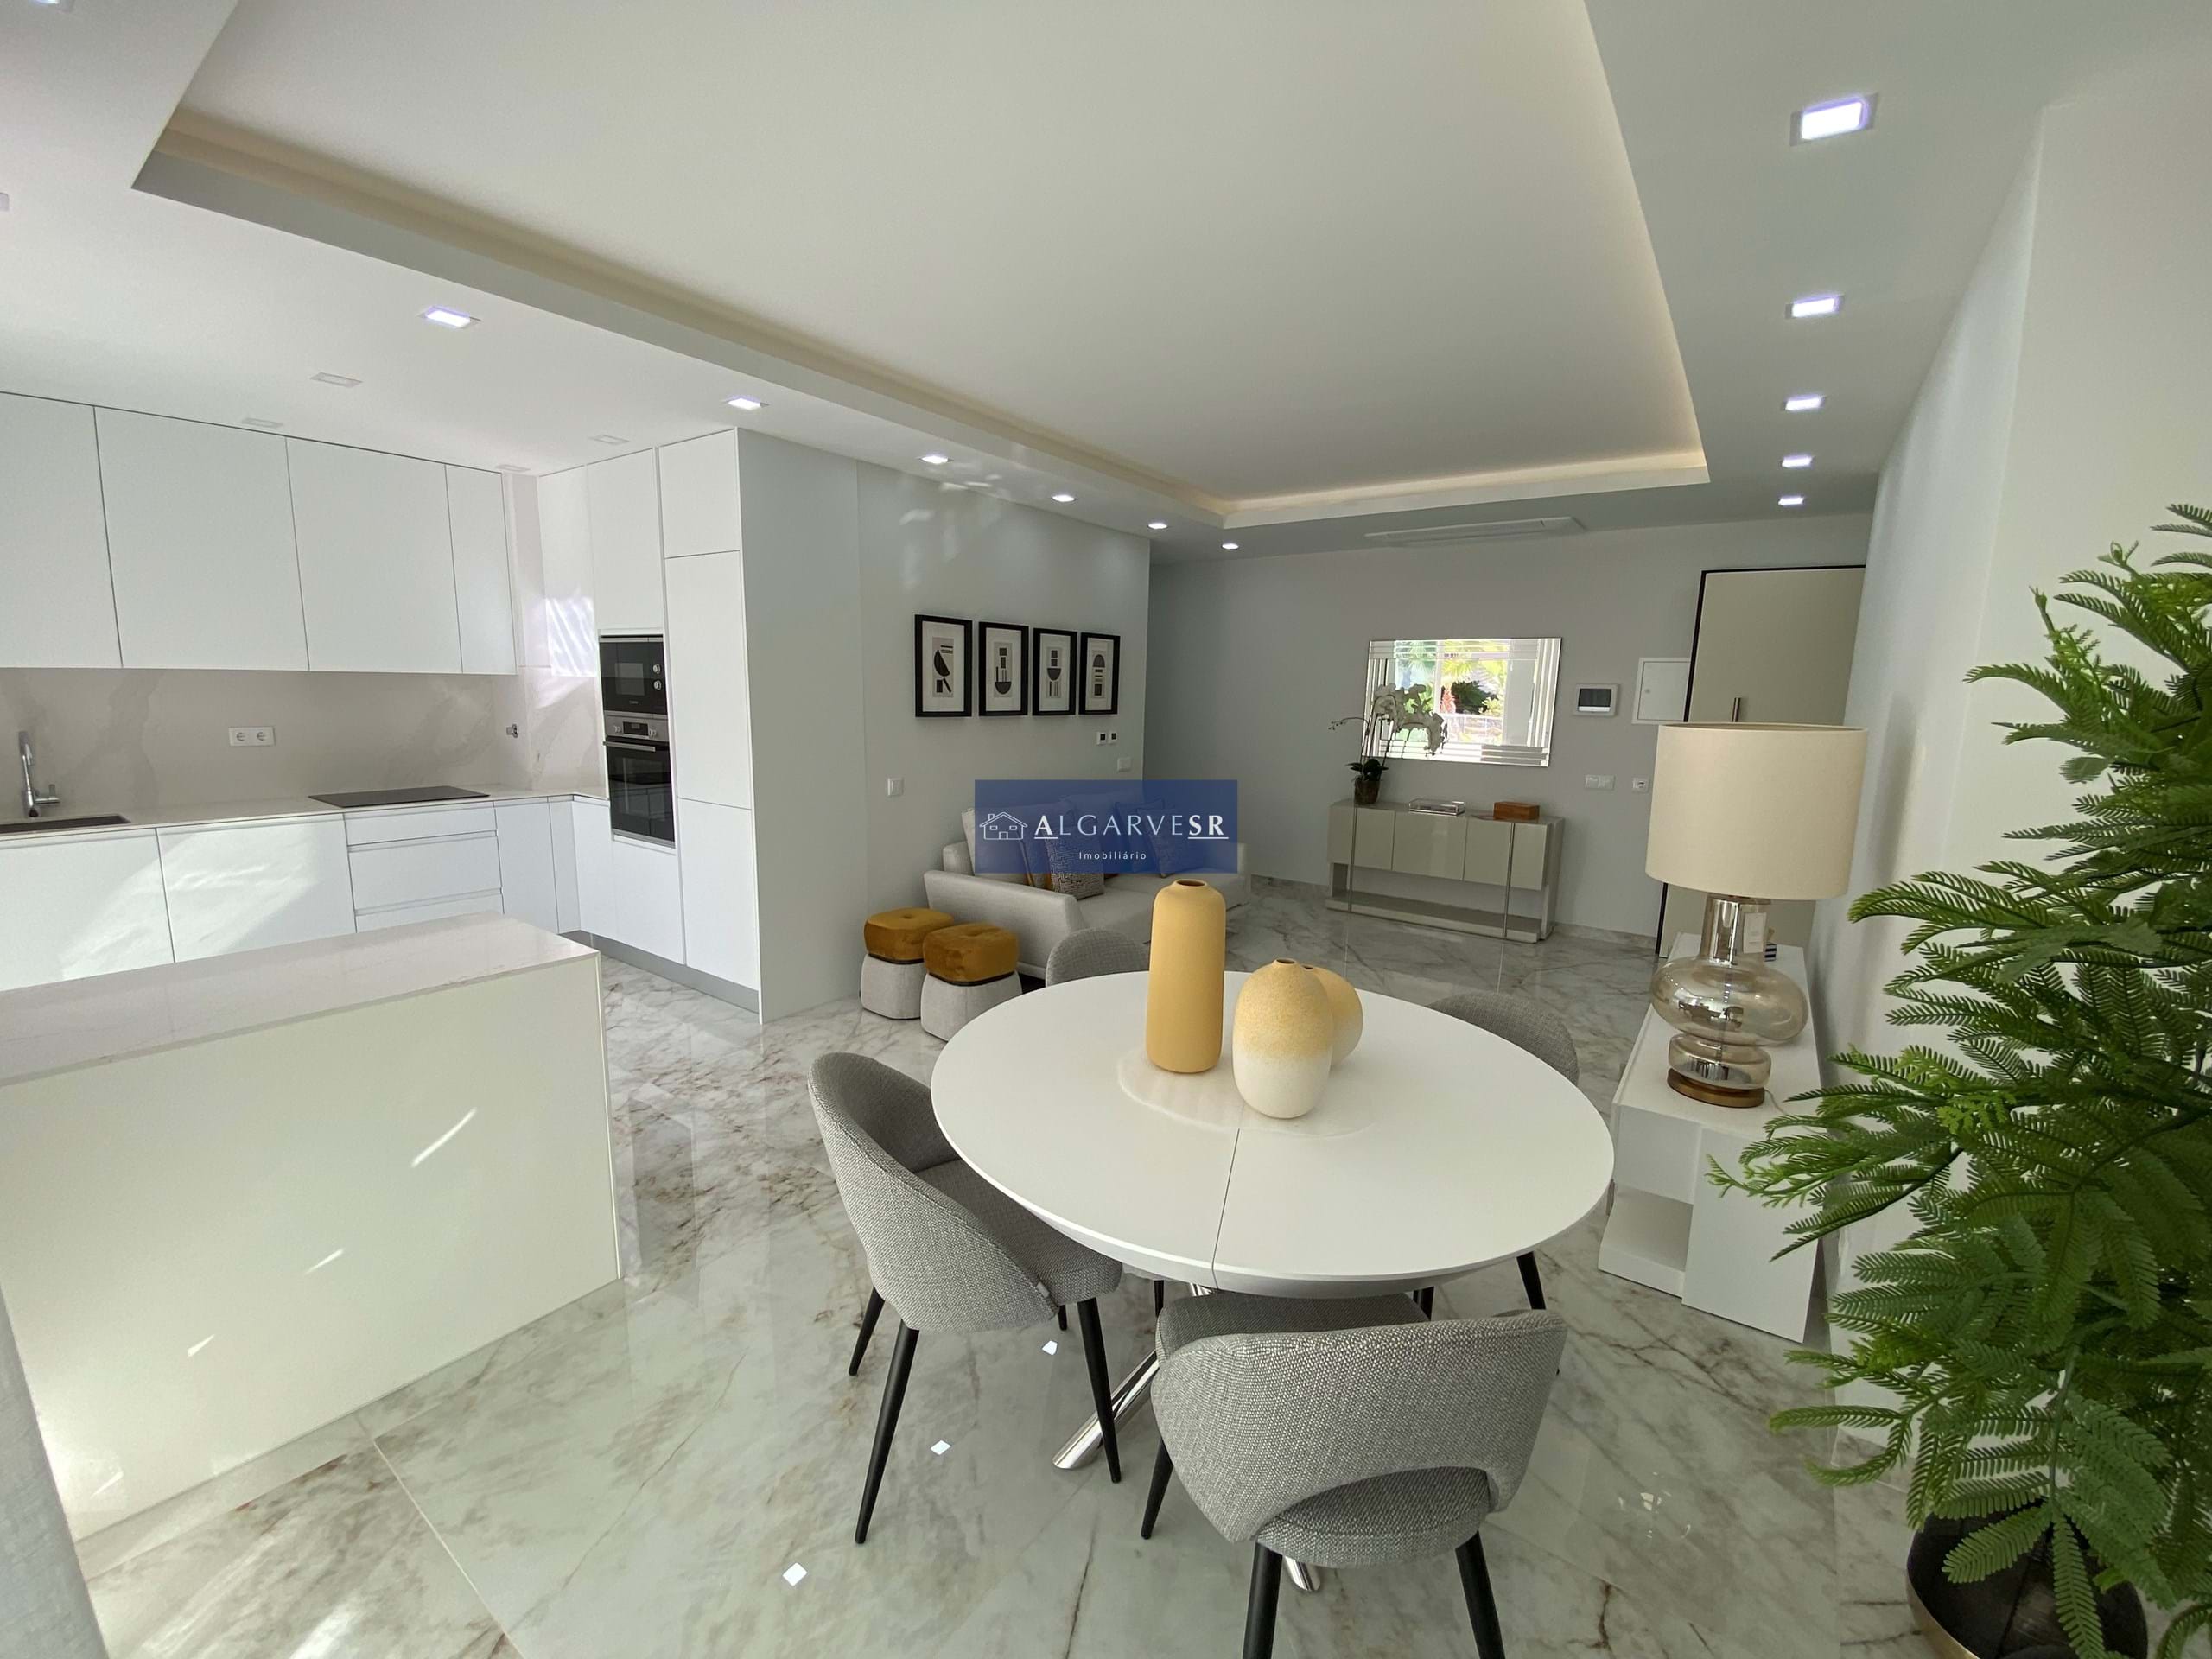 Lagos - Apartment 3 Bedrooms New luxury condominium with pool